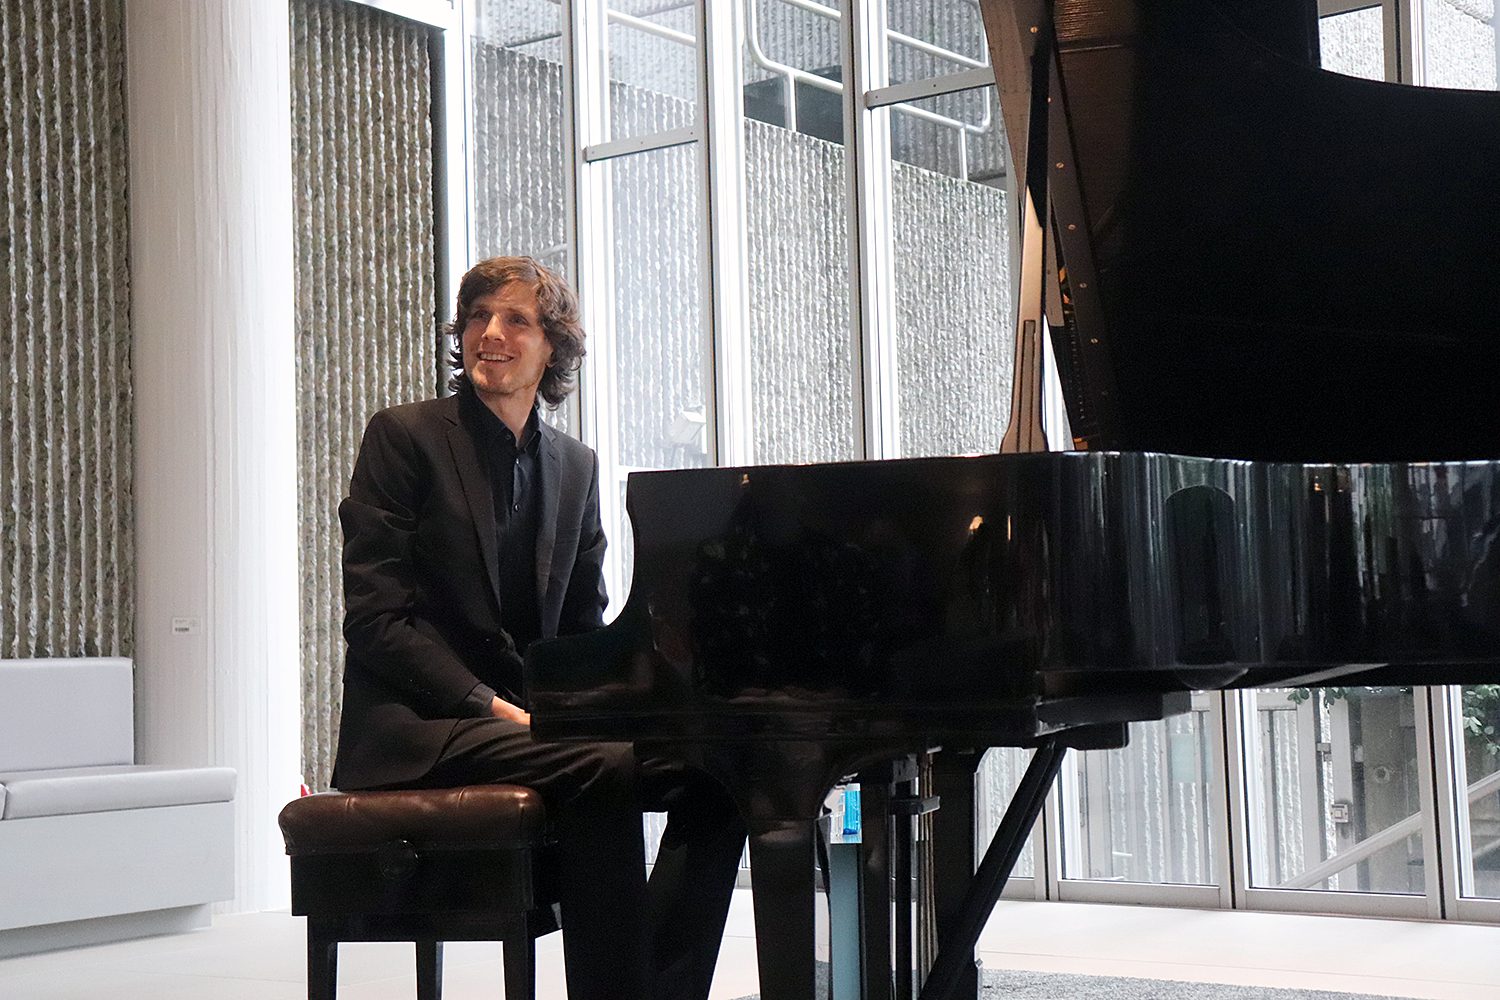 Der Jazzpianist Benjamin Schaefer beim Konzert bei Bayer in der Müllerstraße. Foto: Schnell